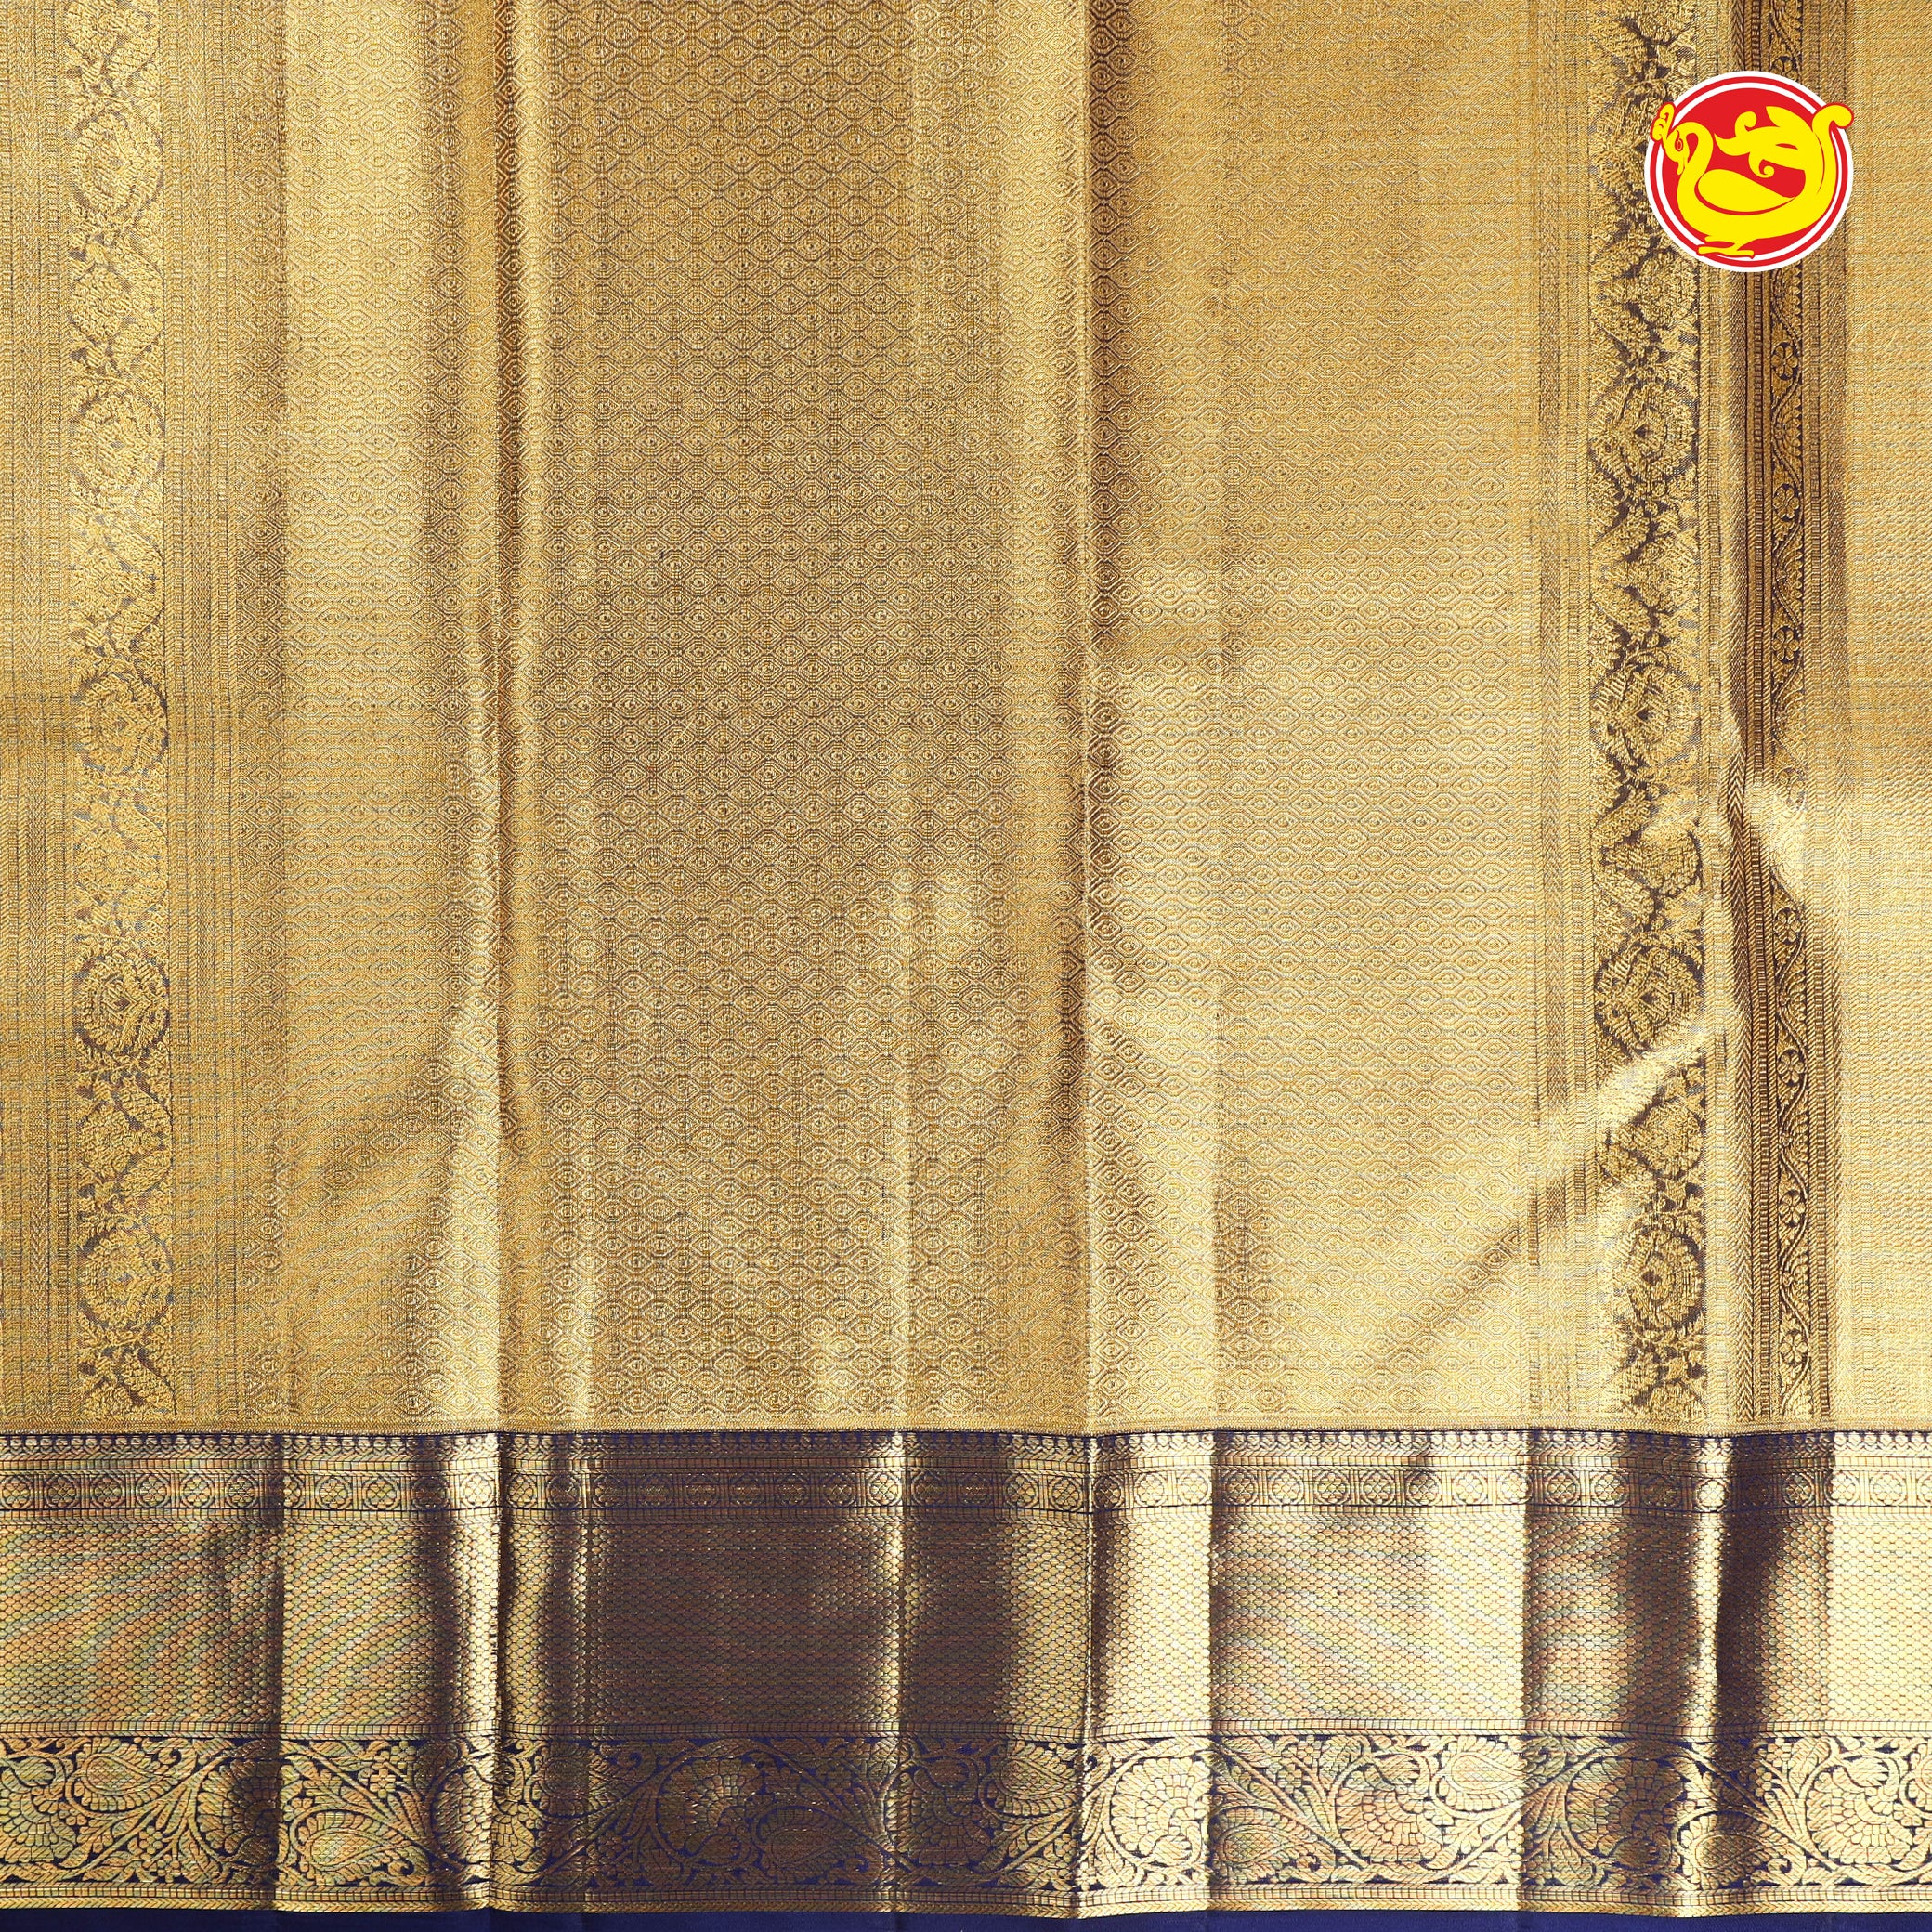 Golden tissue with navy blue wedding silk saree